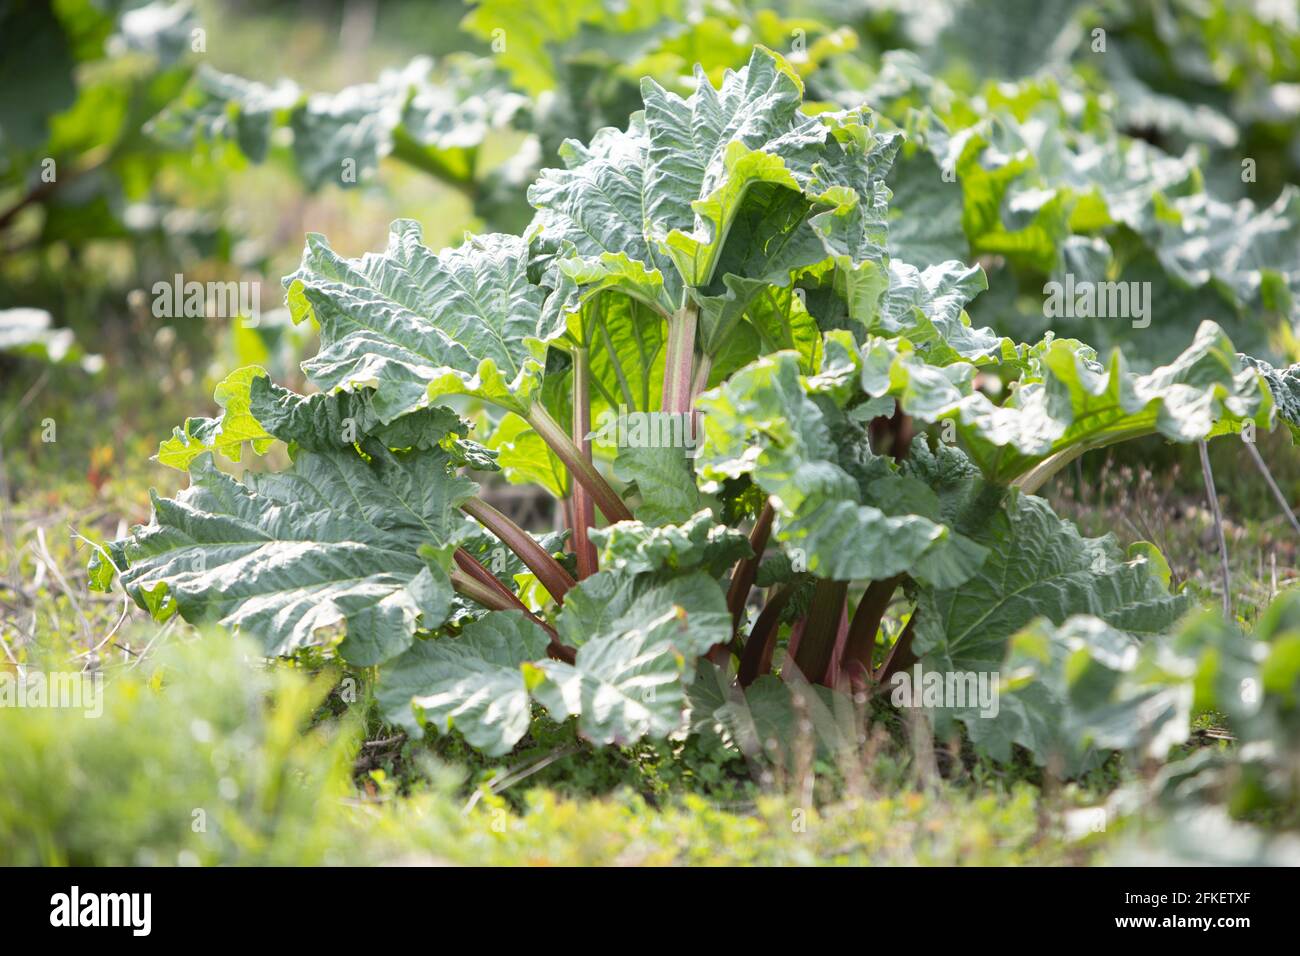 Rheum rhabarbarum, rhubarb plant in a field Stock Photo